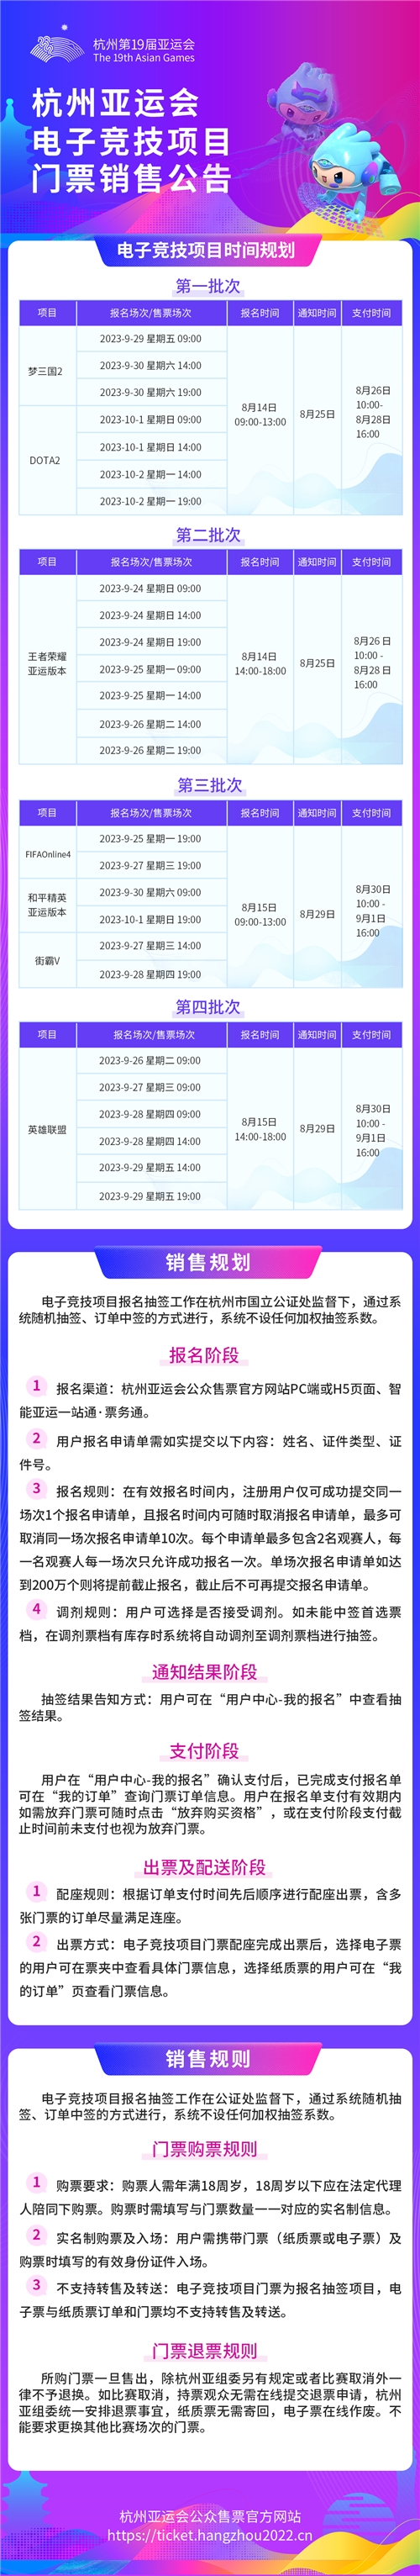 杭州亚运会电子竞技项目门票14日启动销售